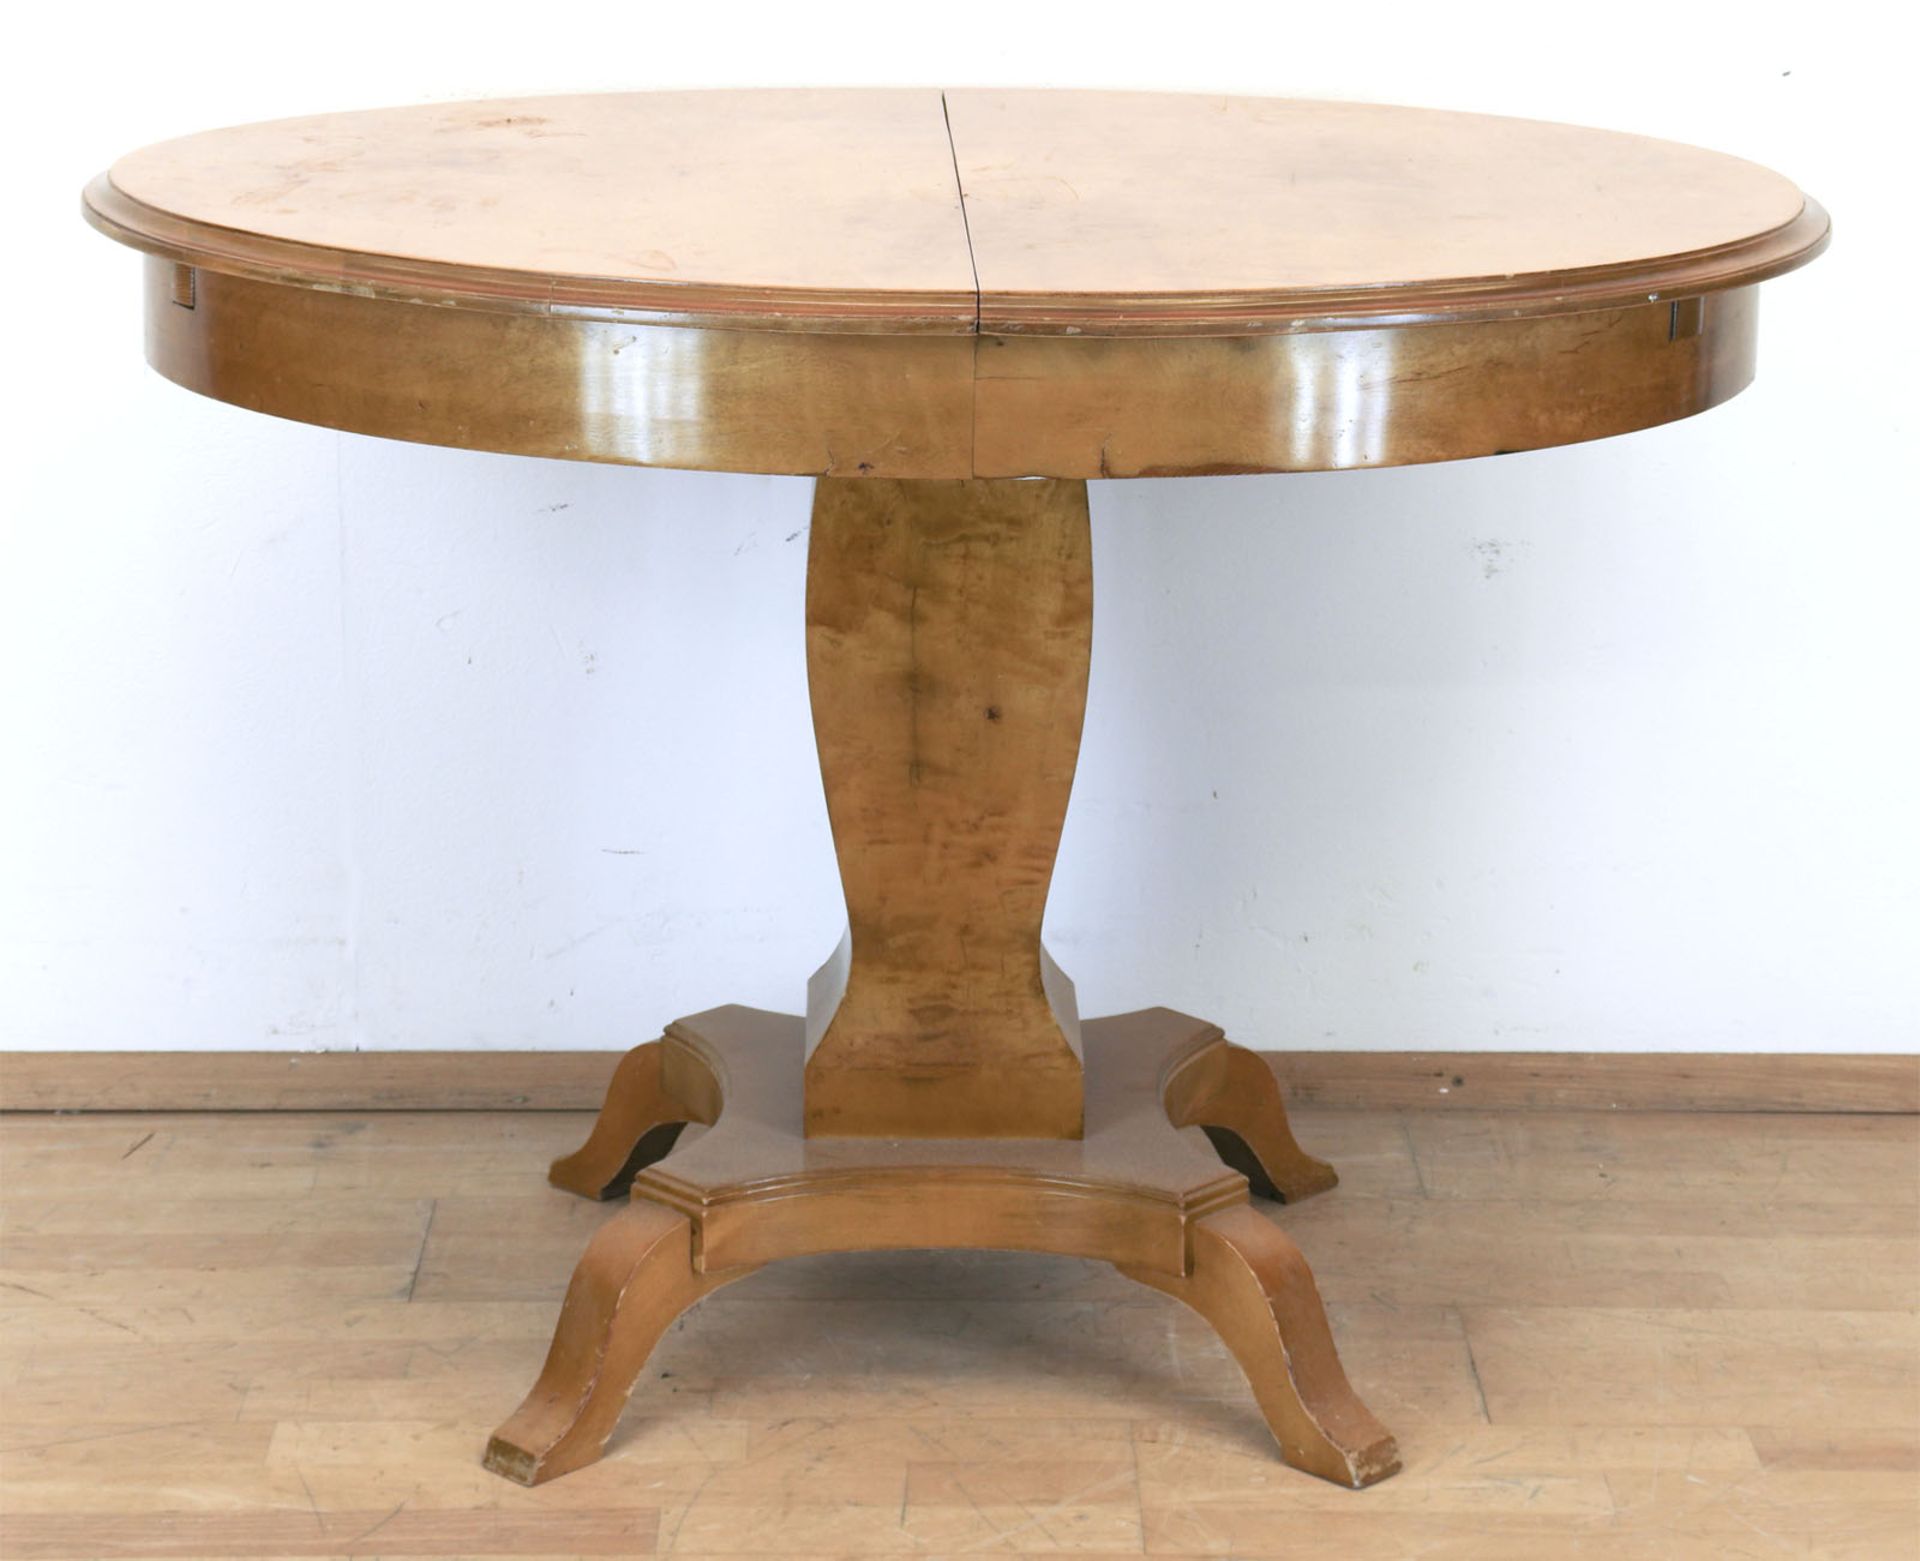 Tisch im Biedermeierstil, Birke massiv, über 4-passig eingebogter Fußplatte auf geschwungenen Füßen